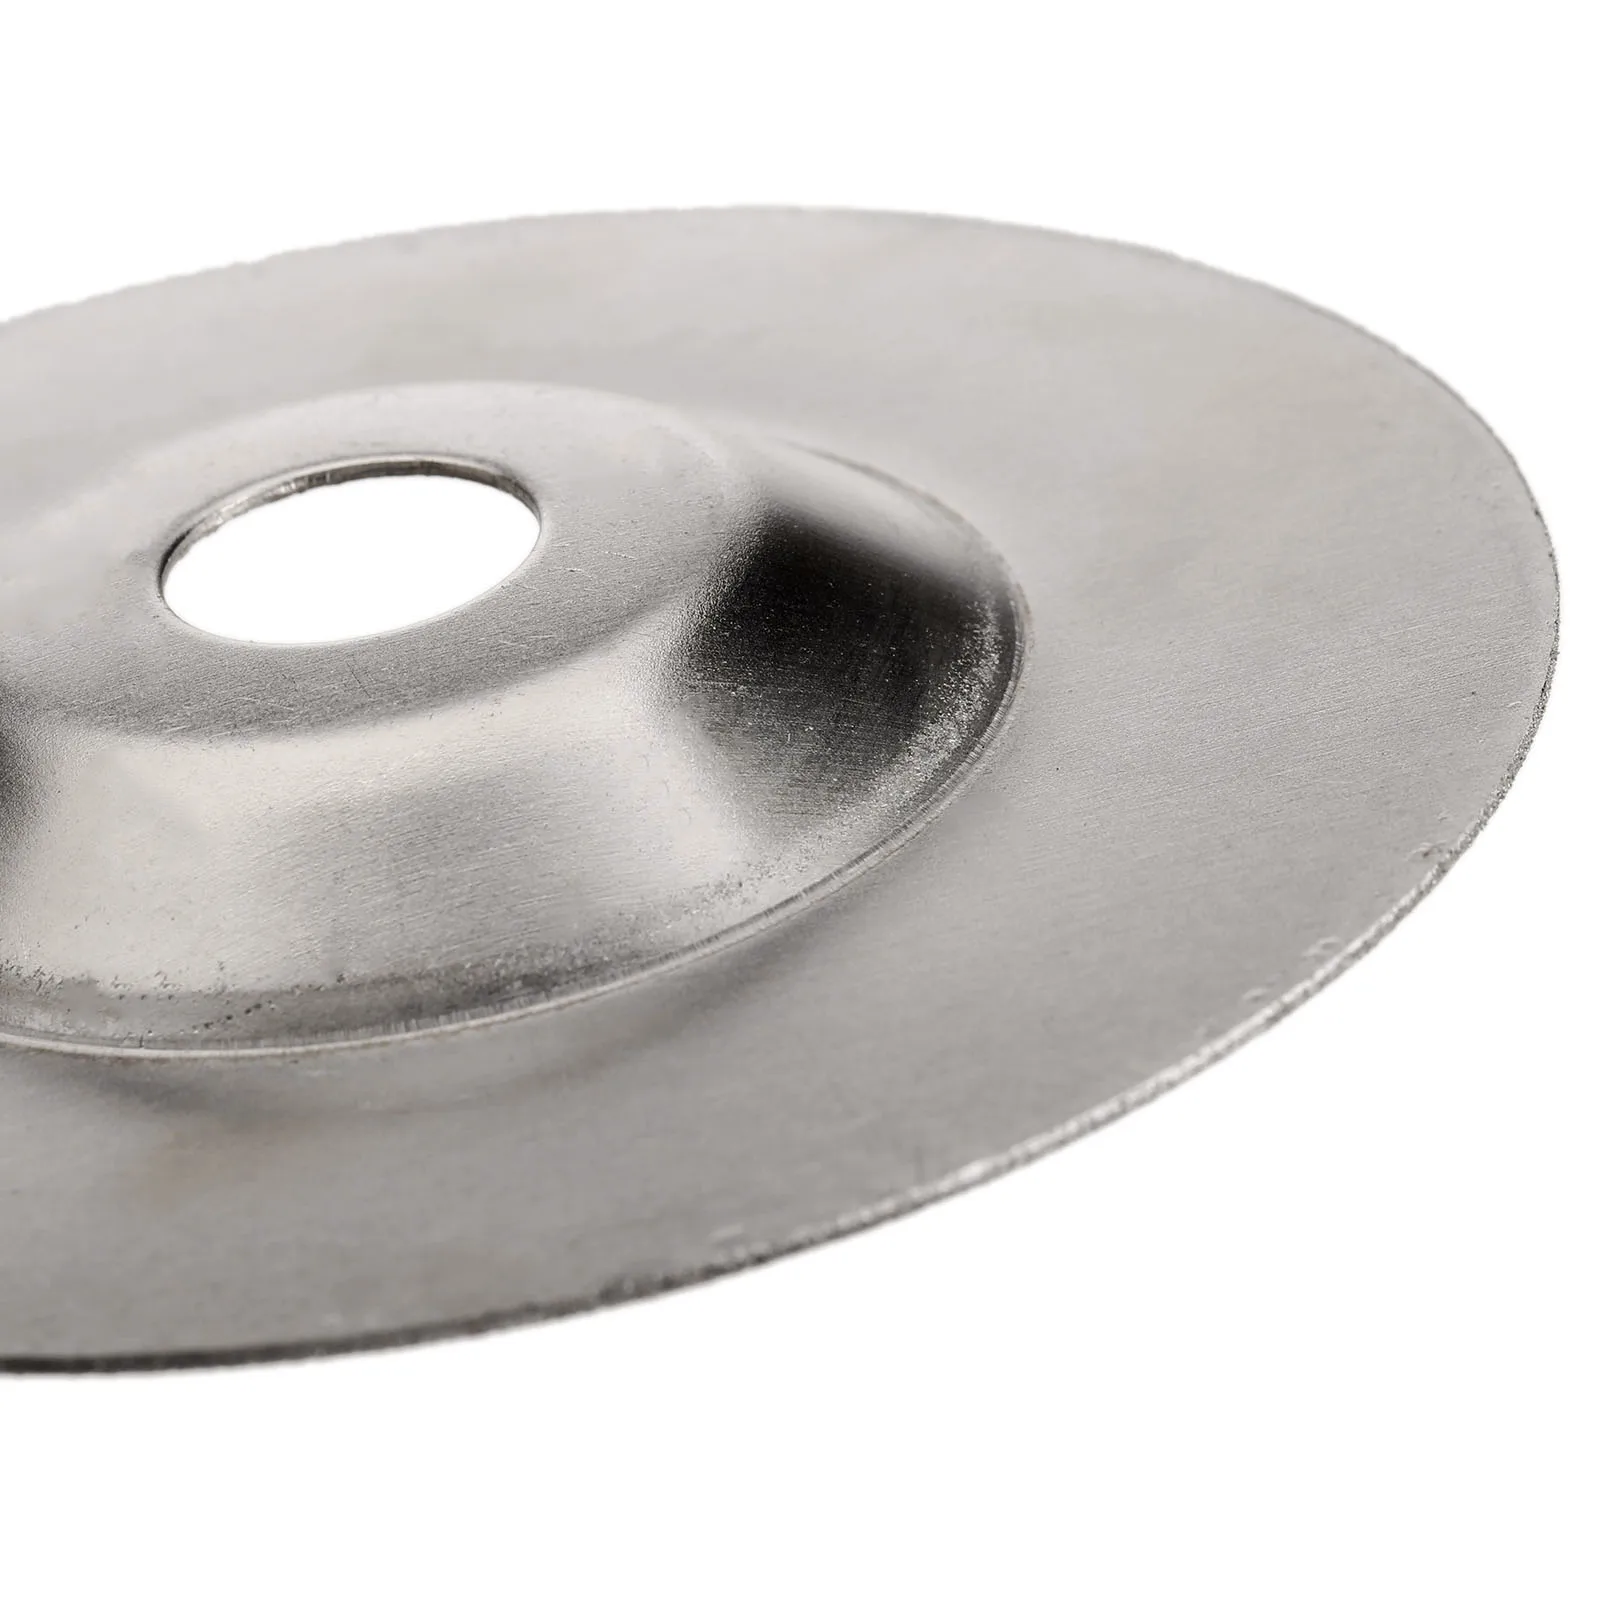 3 шт. мини дисковые пилы Dremel режущий диск резак шлифовальный круг набор Dremel аксессуары электроинструмент для Dremel роторный инструмент